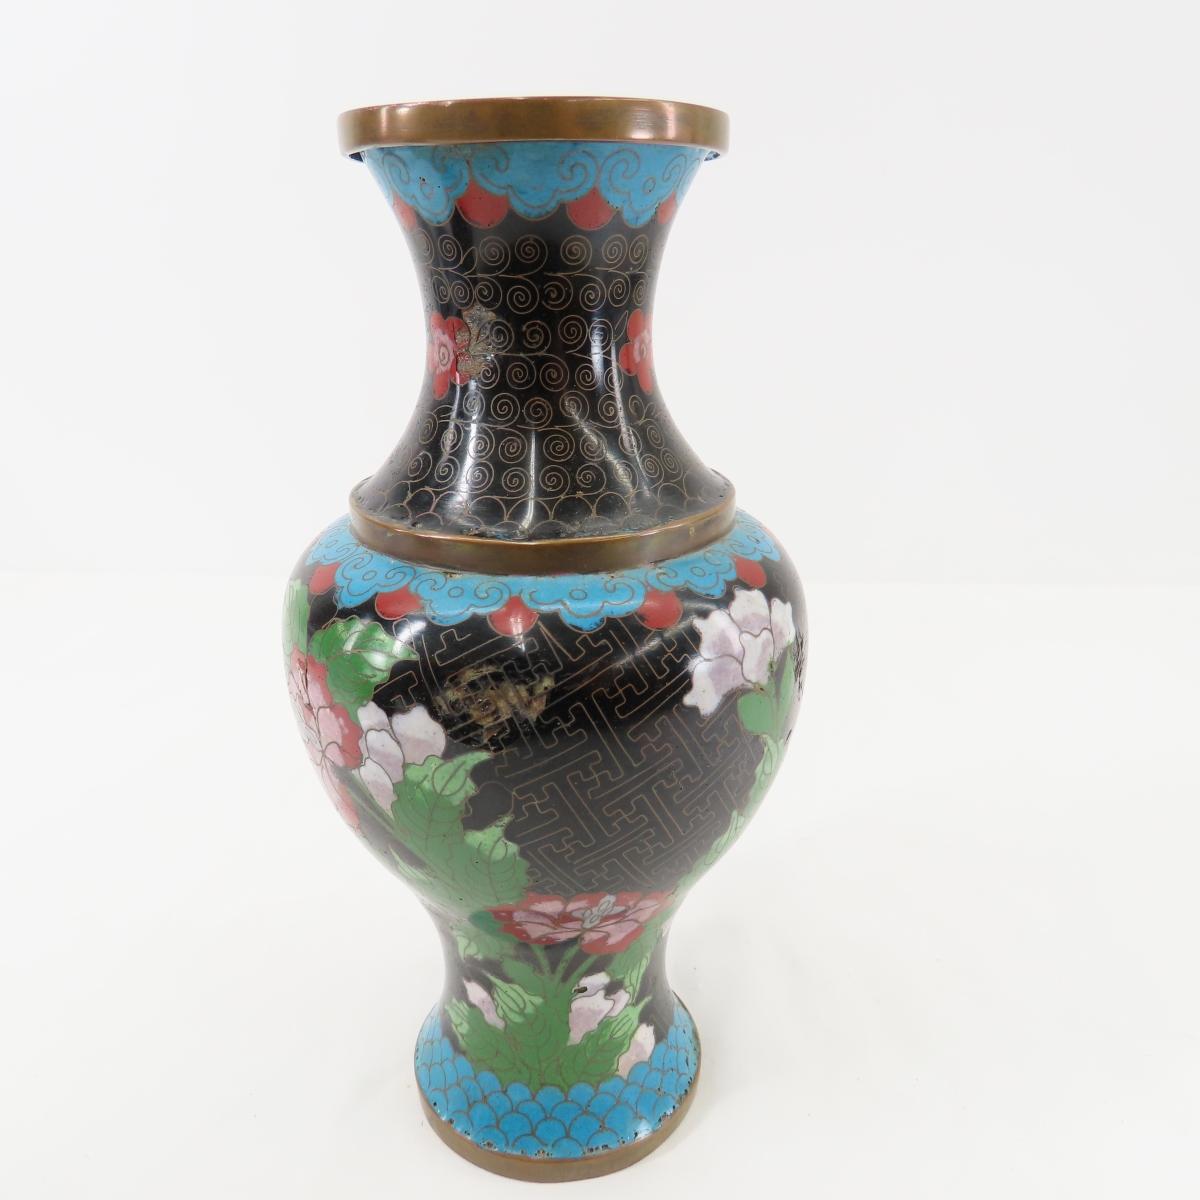 Porcelain head rests, enamel vases & more